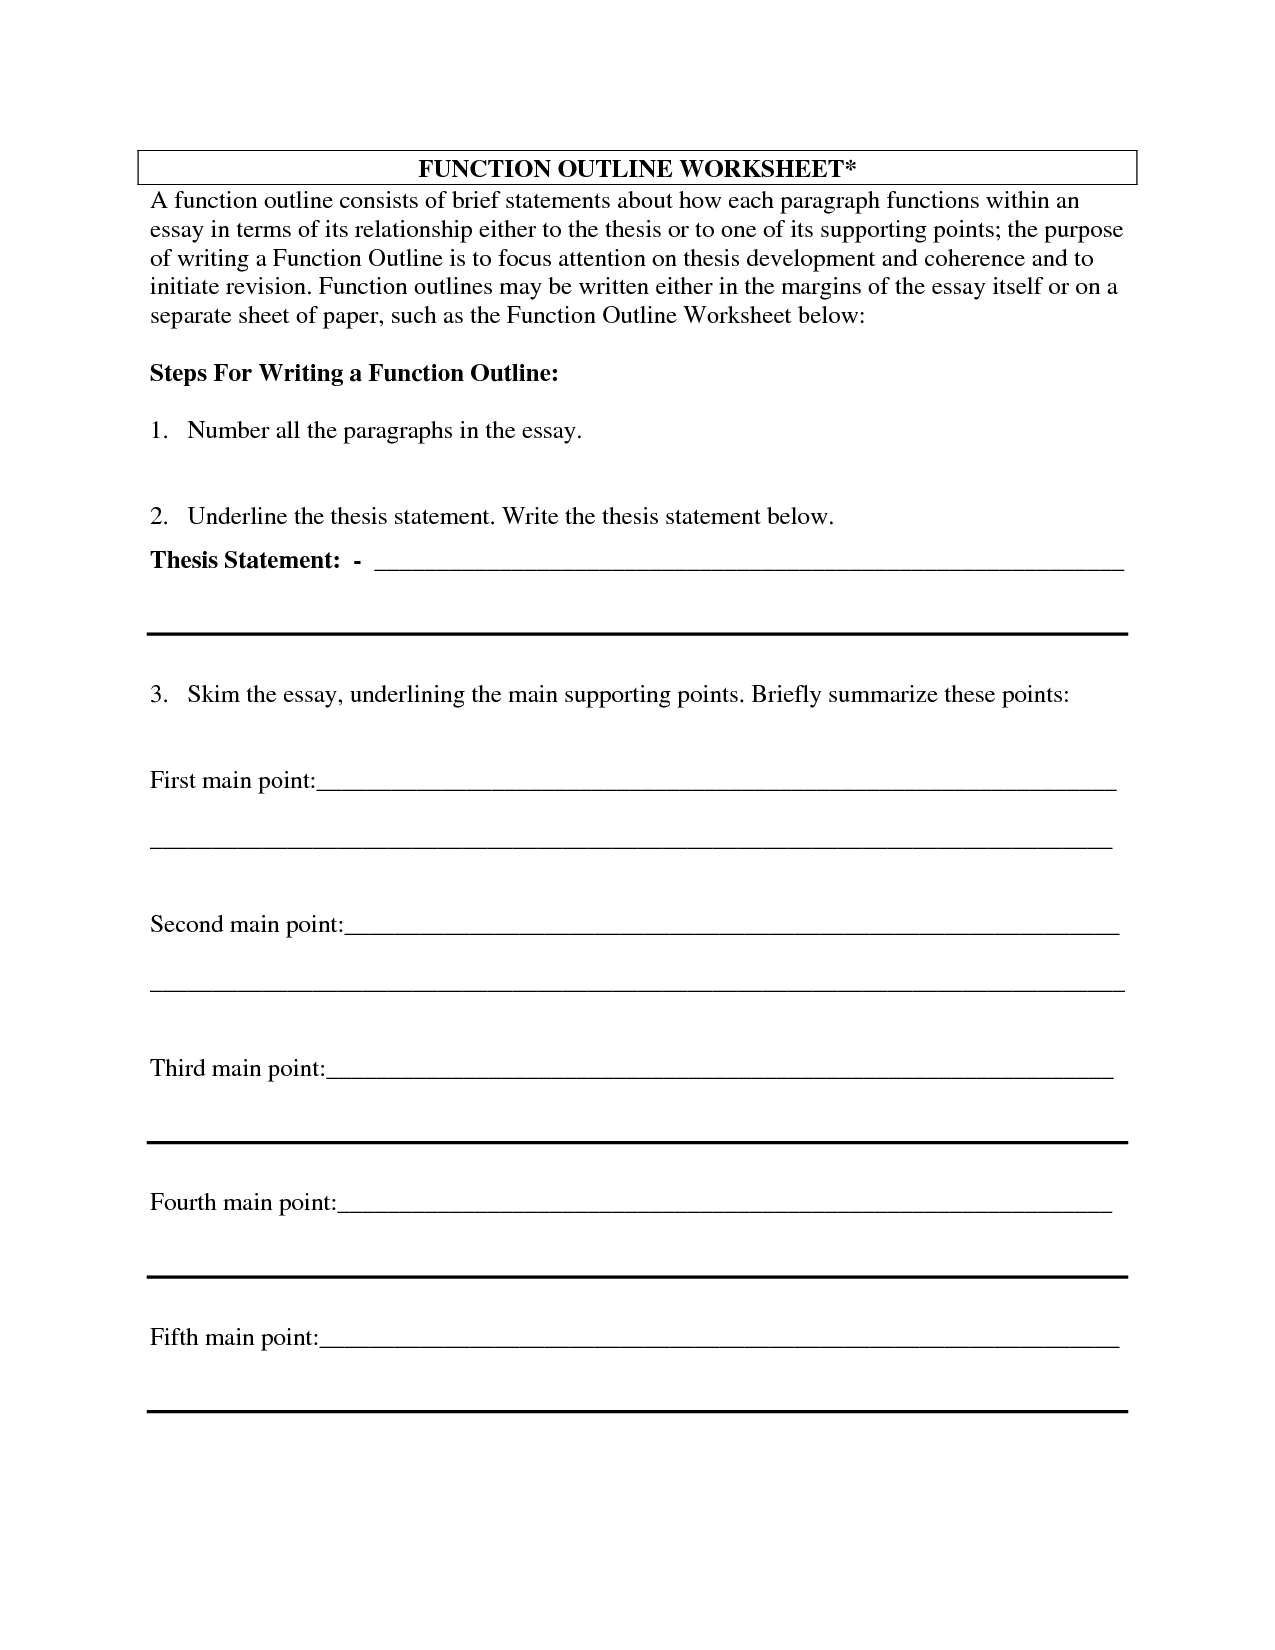 Argumentative essay outline worksheet